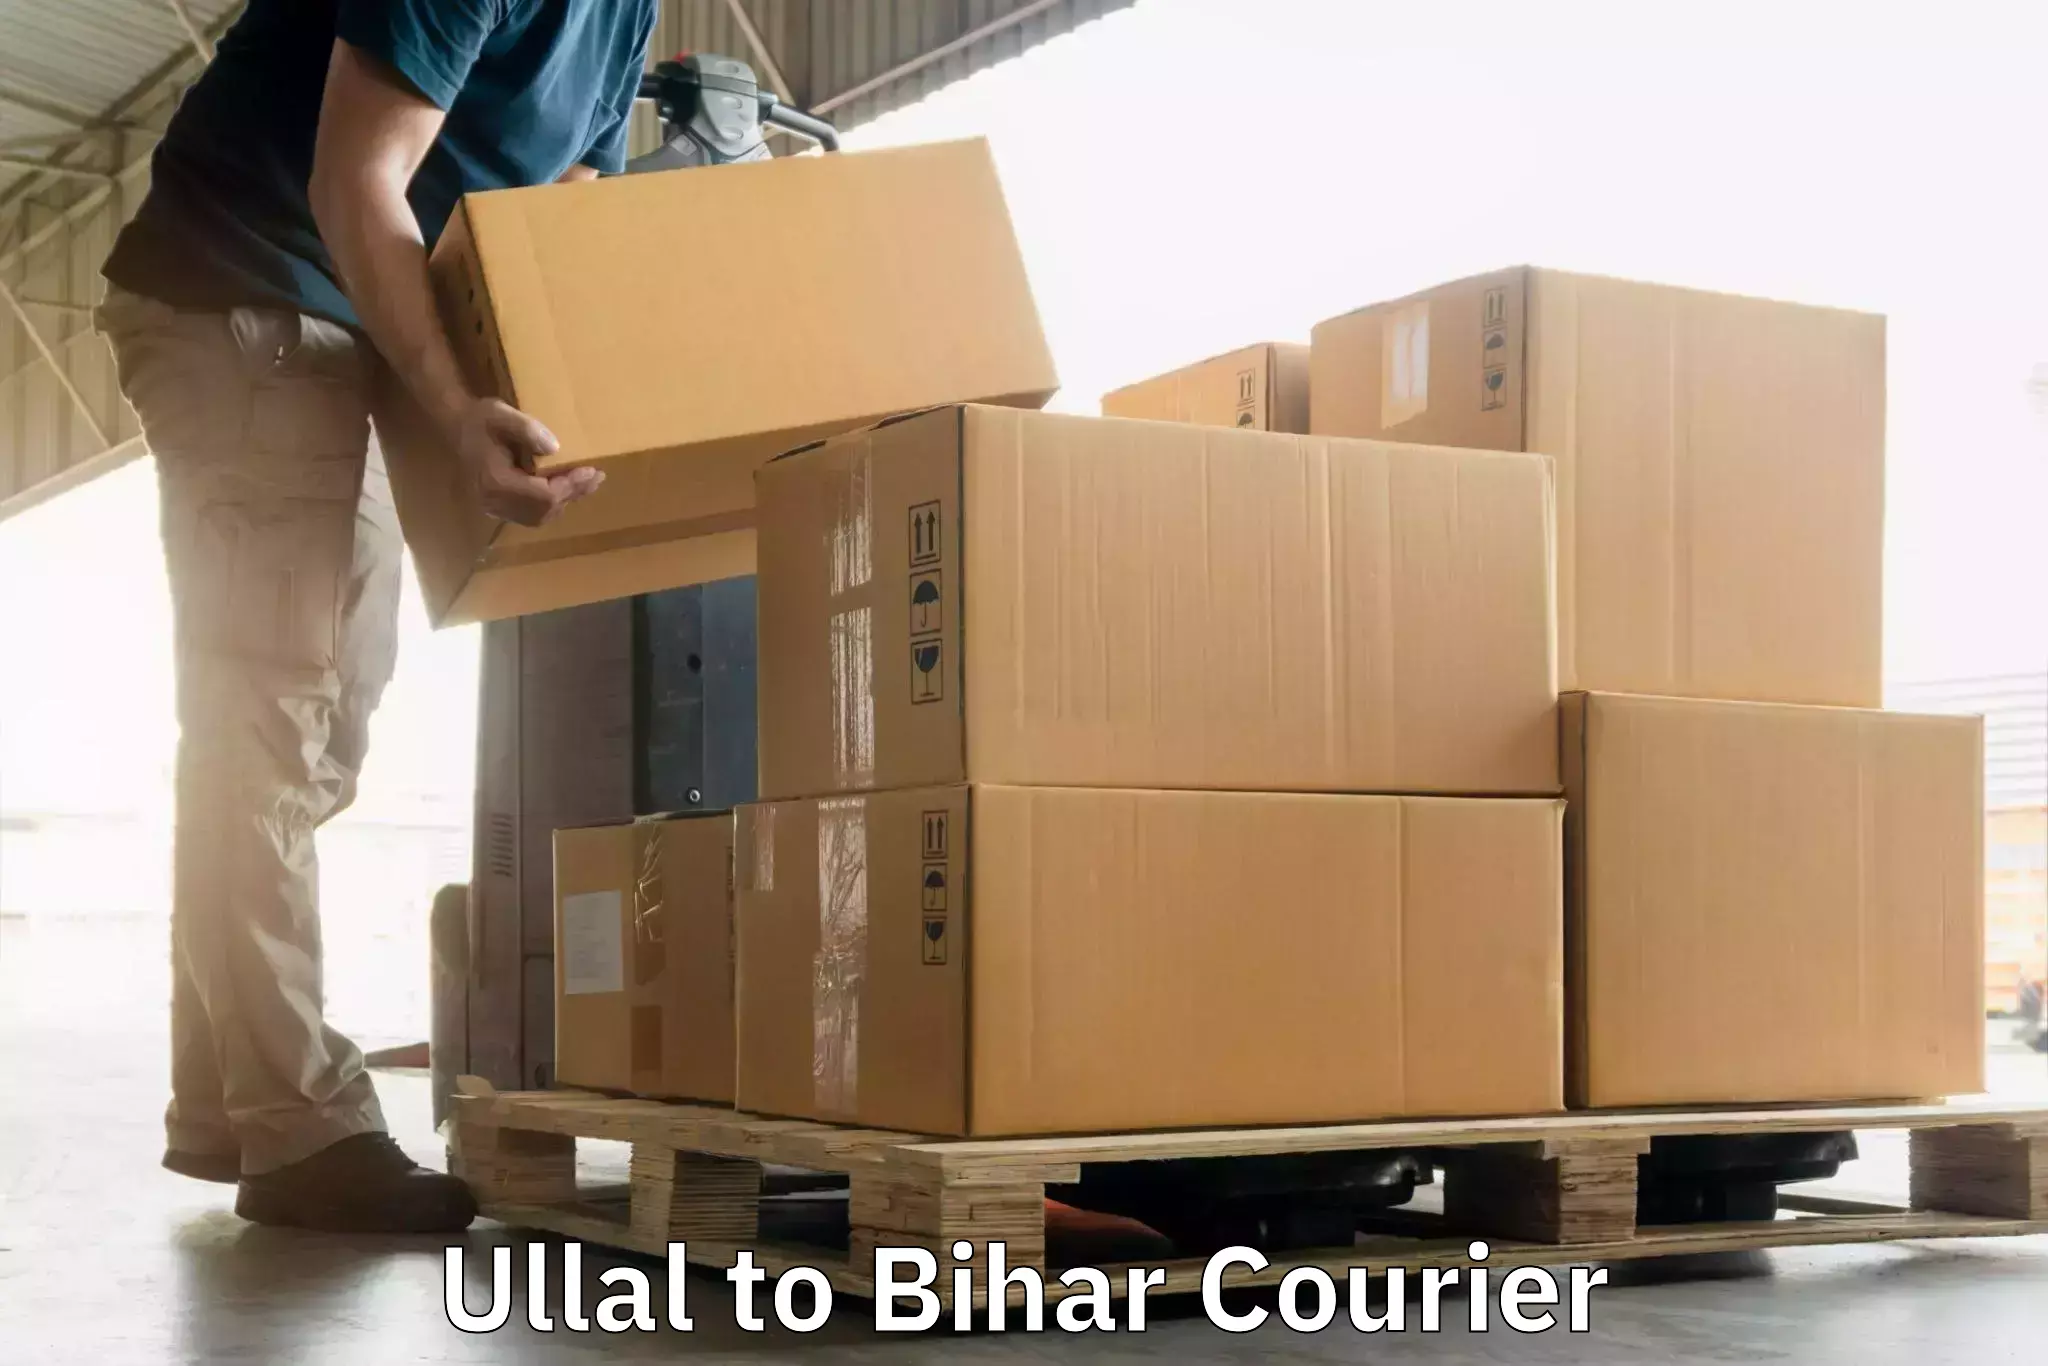 Express postal services Ullal to Aurangabad Bihar